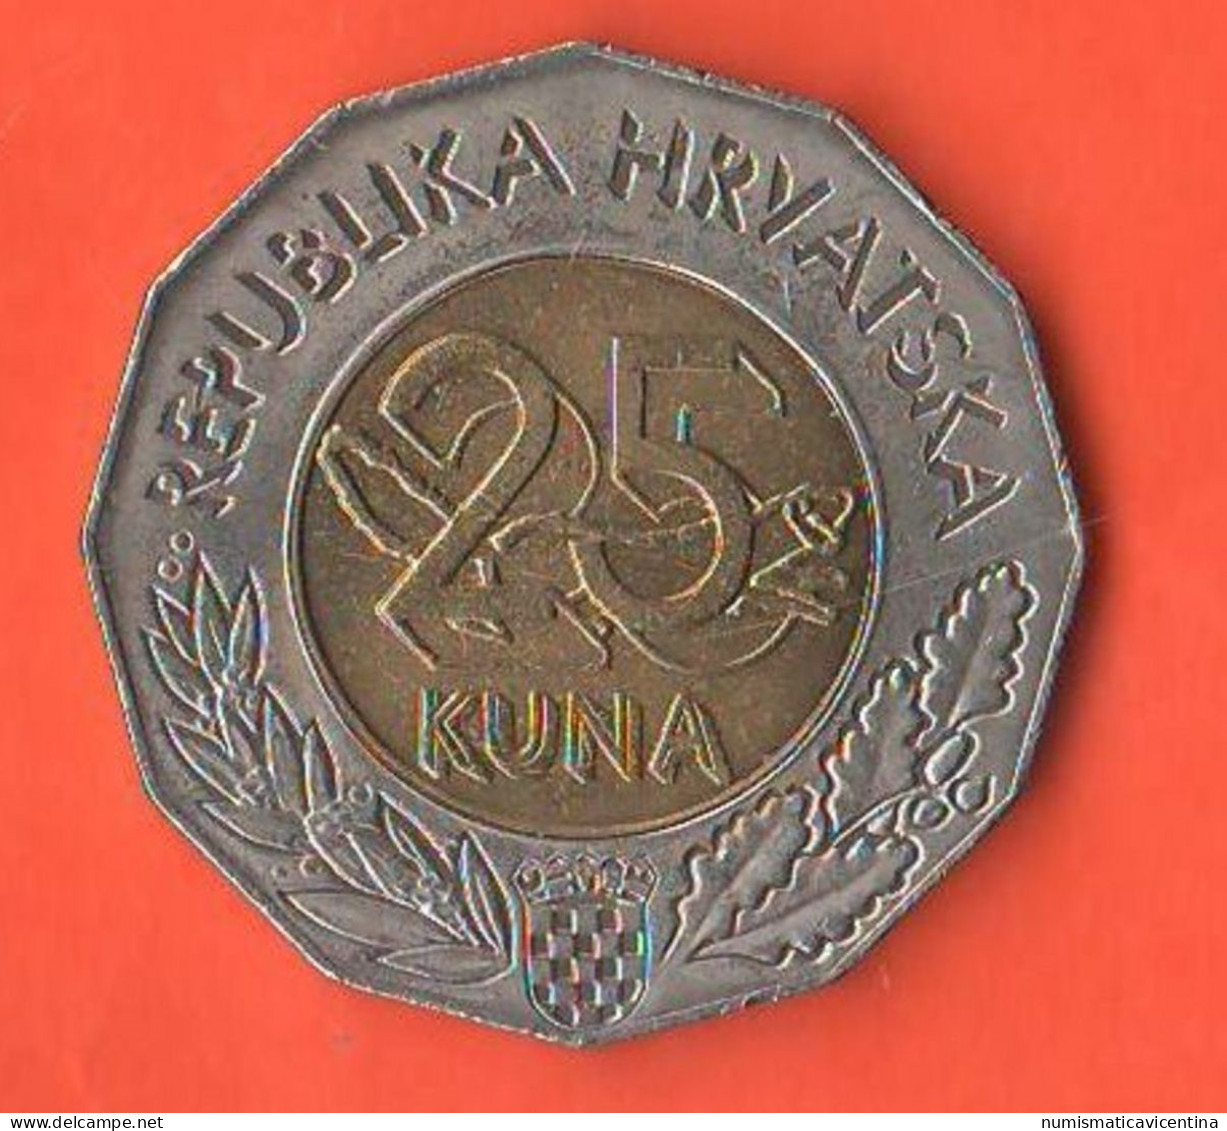 Croazia 25 Kuna 1997 Croatia ONU Republic Hrvatska Croatie Bimetallic Coin - Croatie